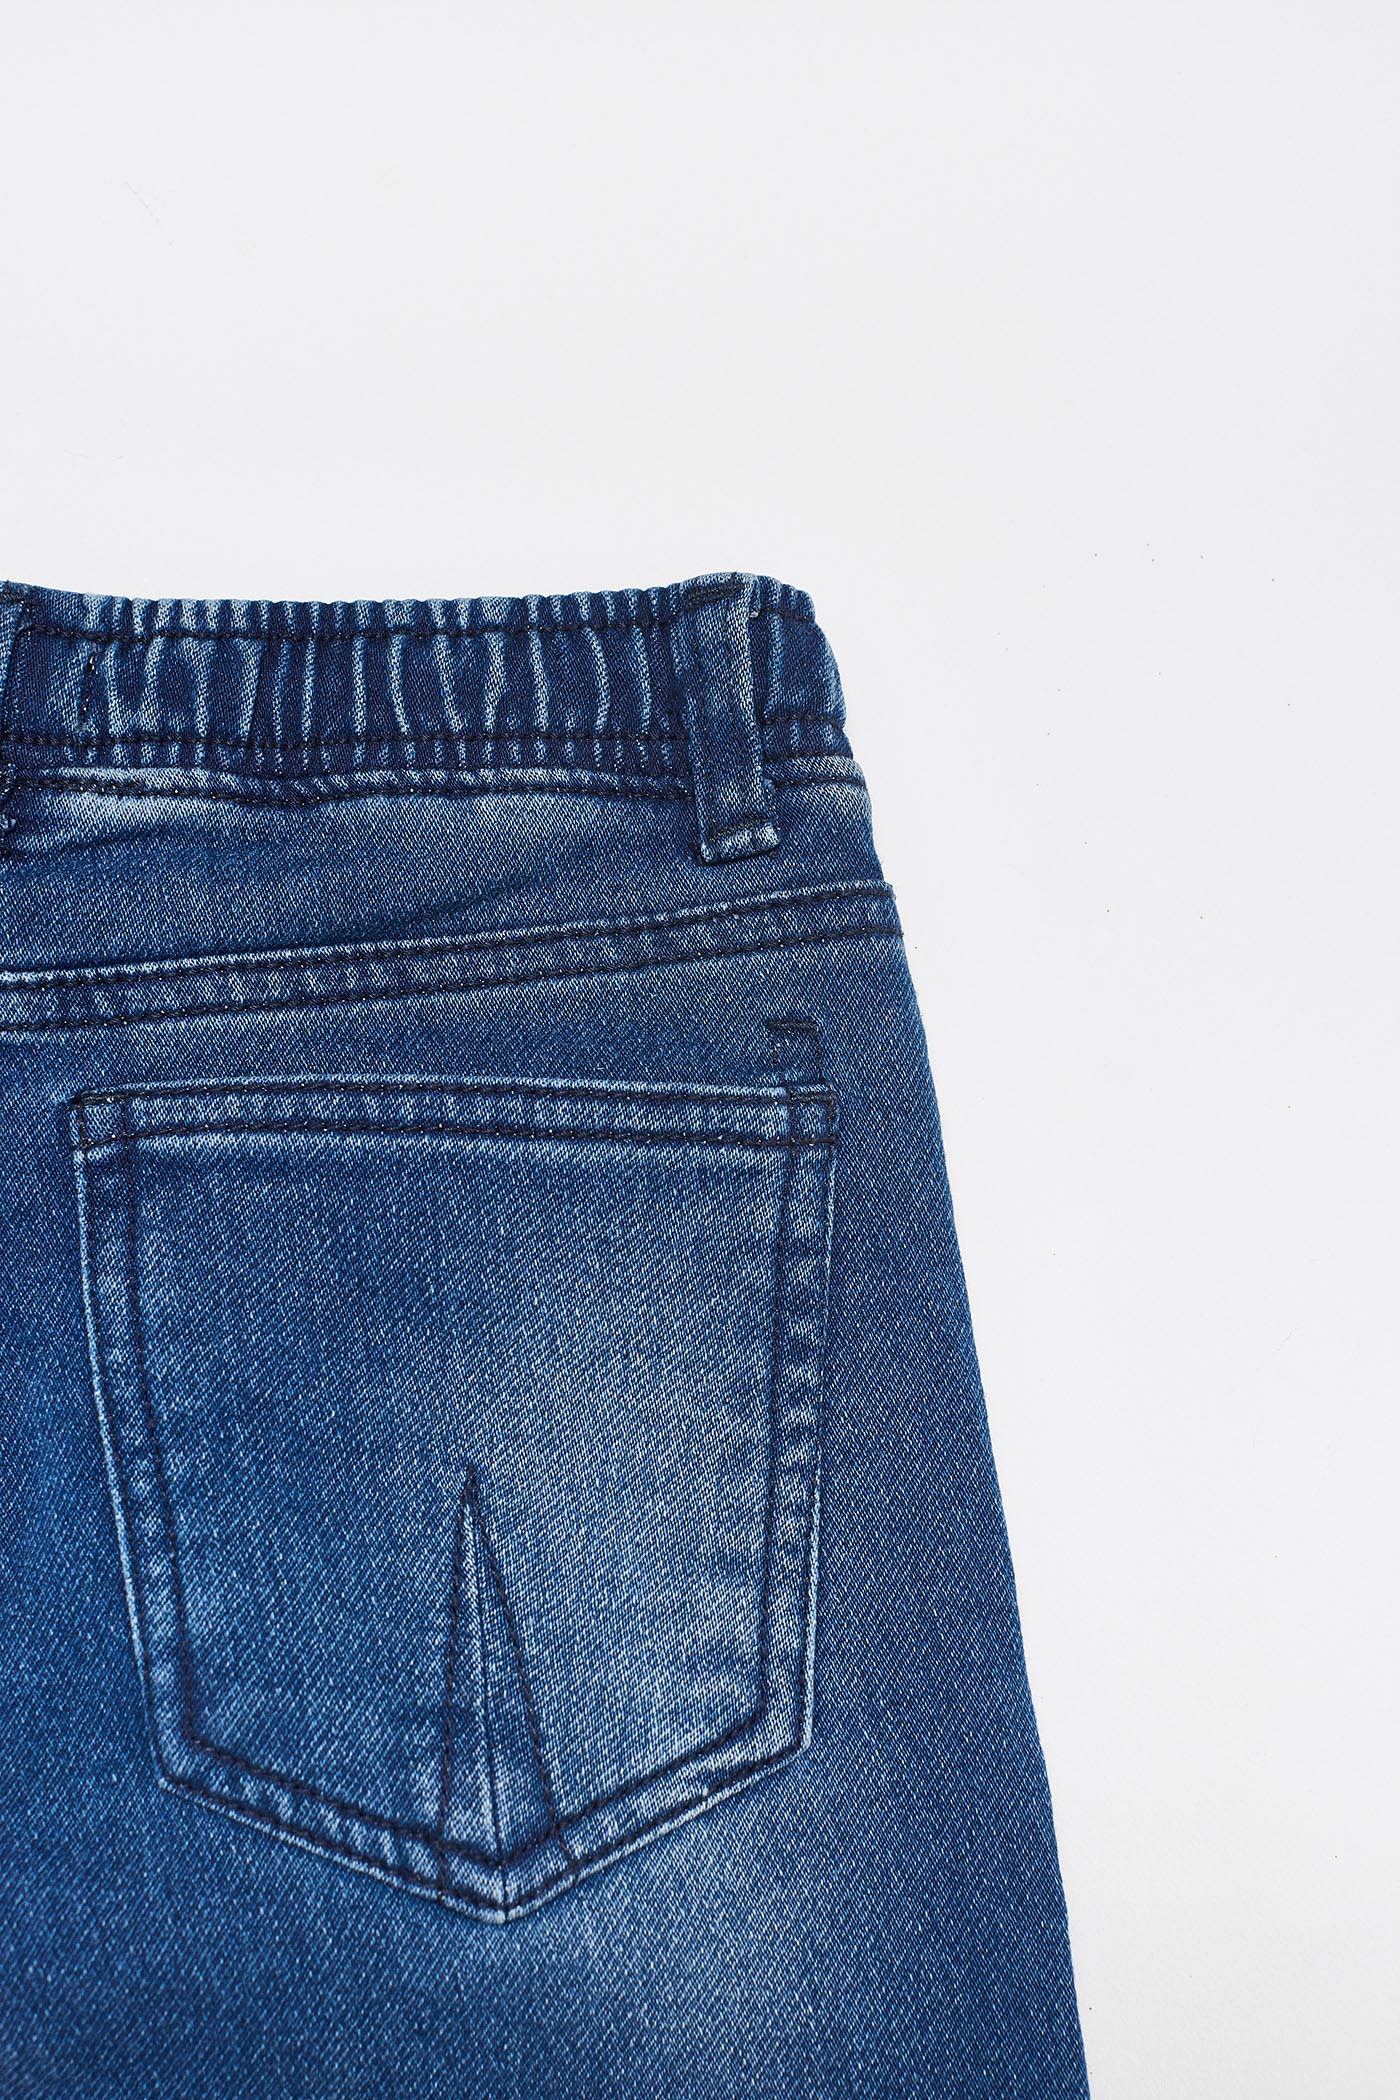 شلوار جینز 25798 سایز 3 تا 10 سال مارک Sfera